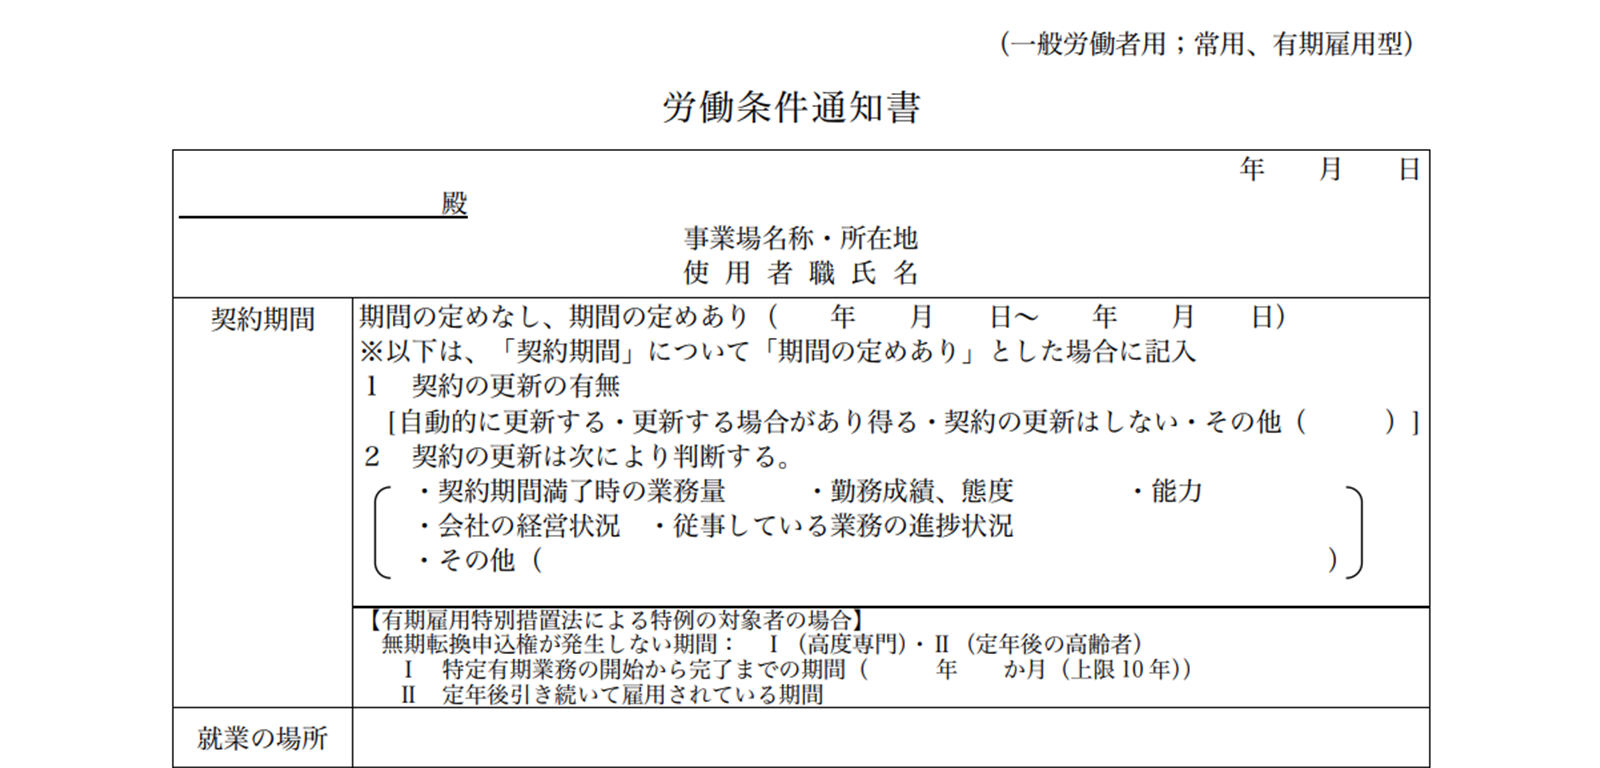 厚生労働省東京労働局が定める労働条件通知書ひな形